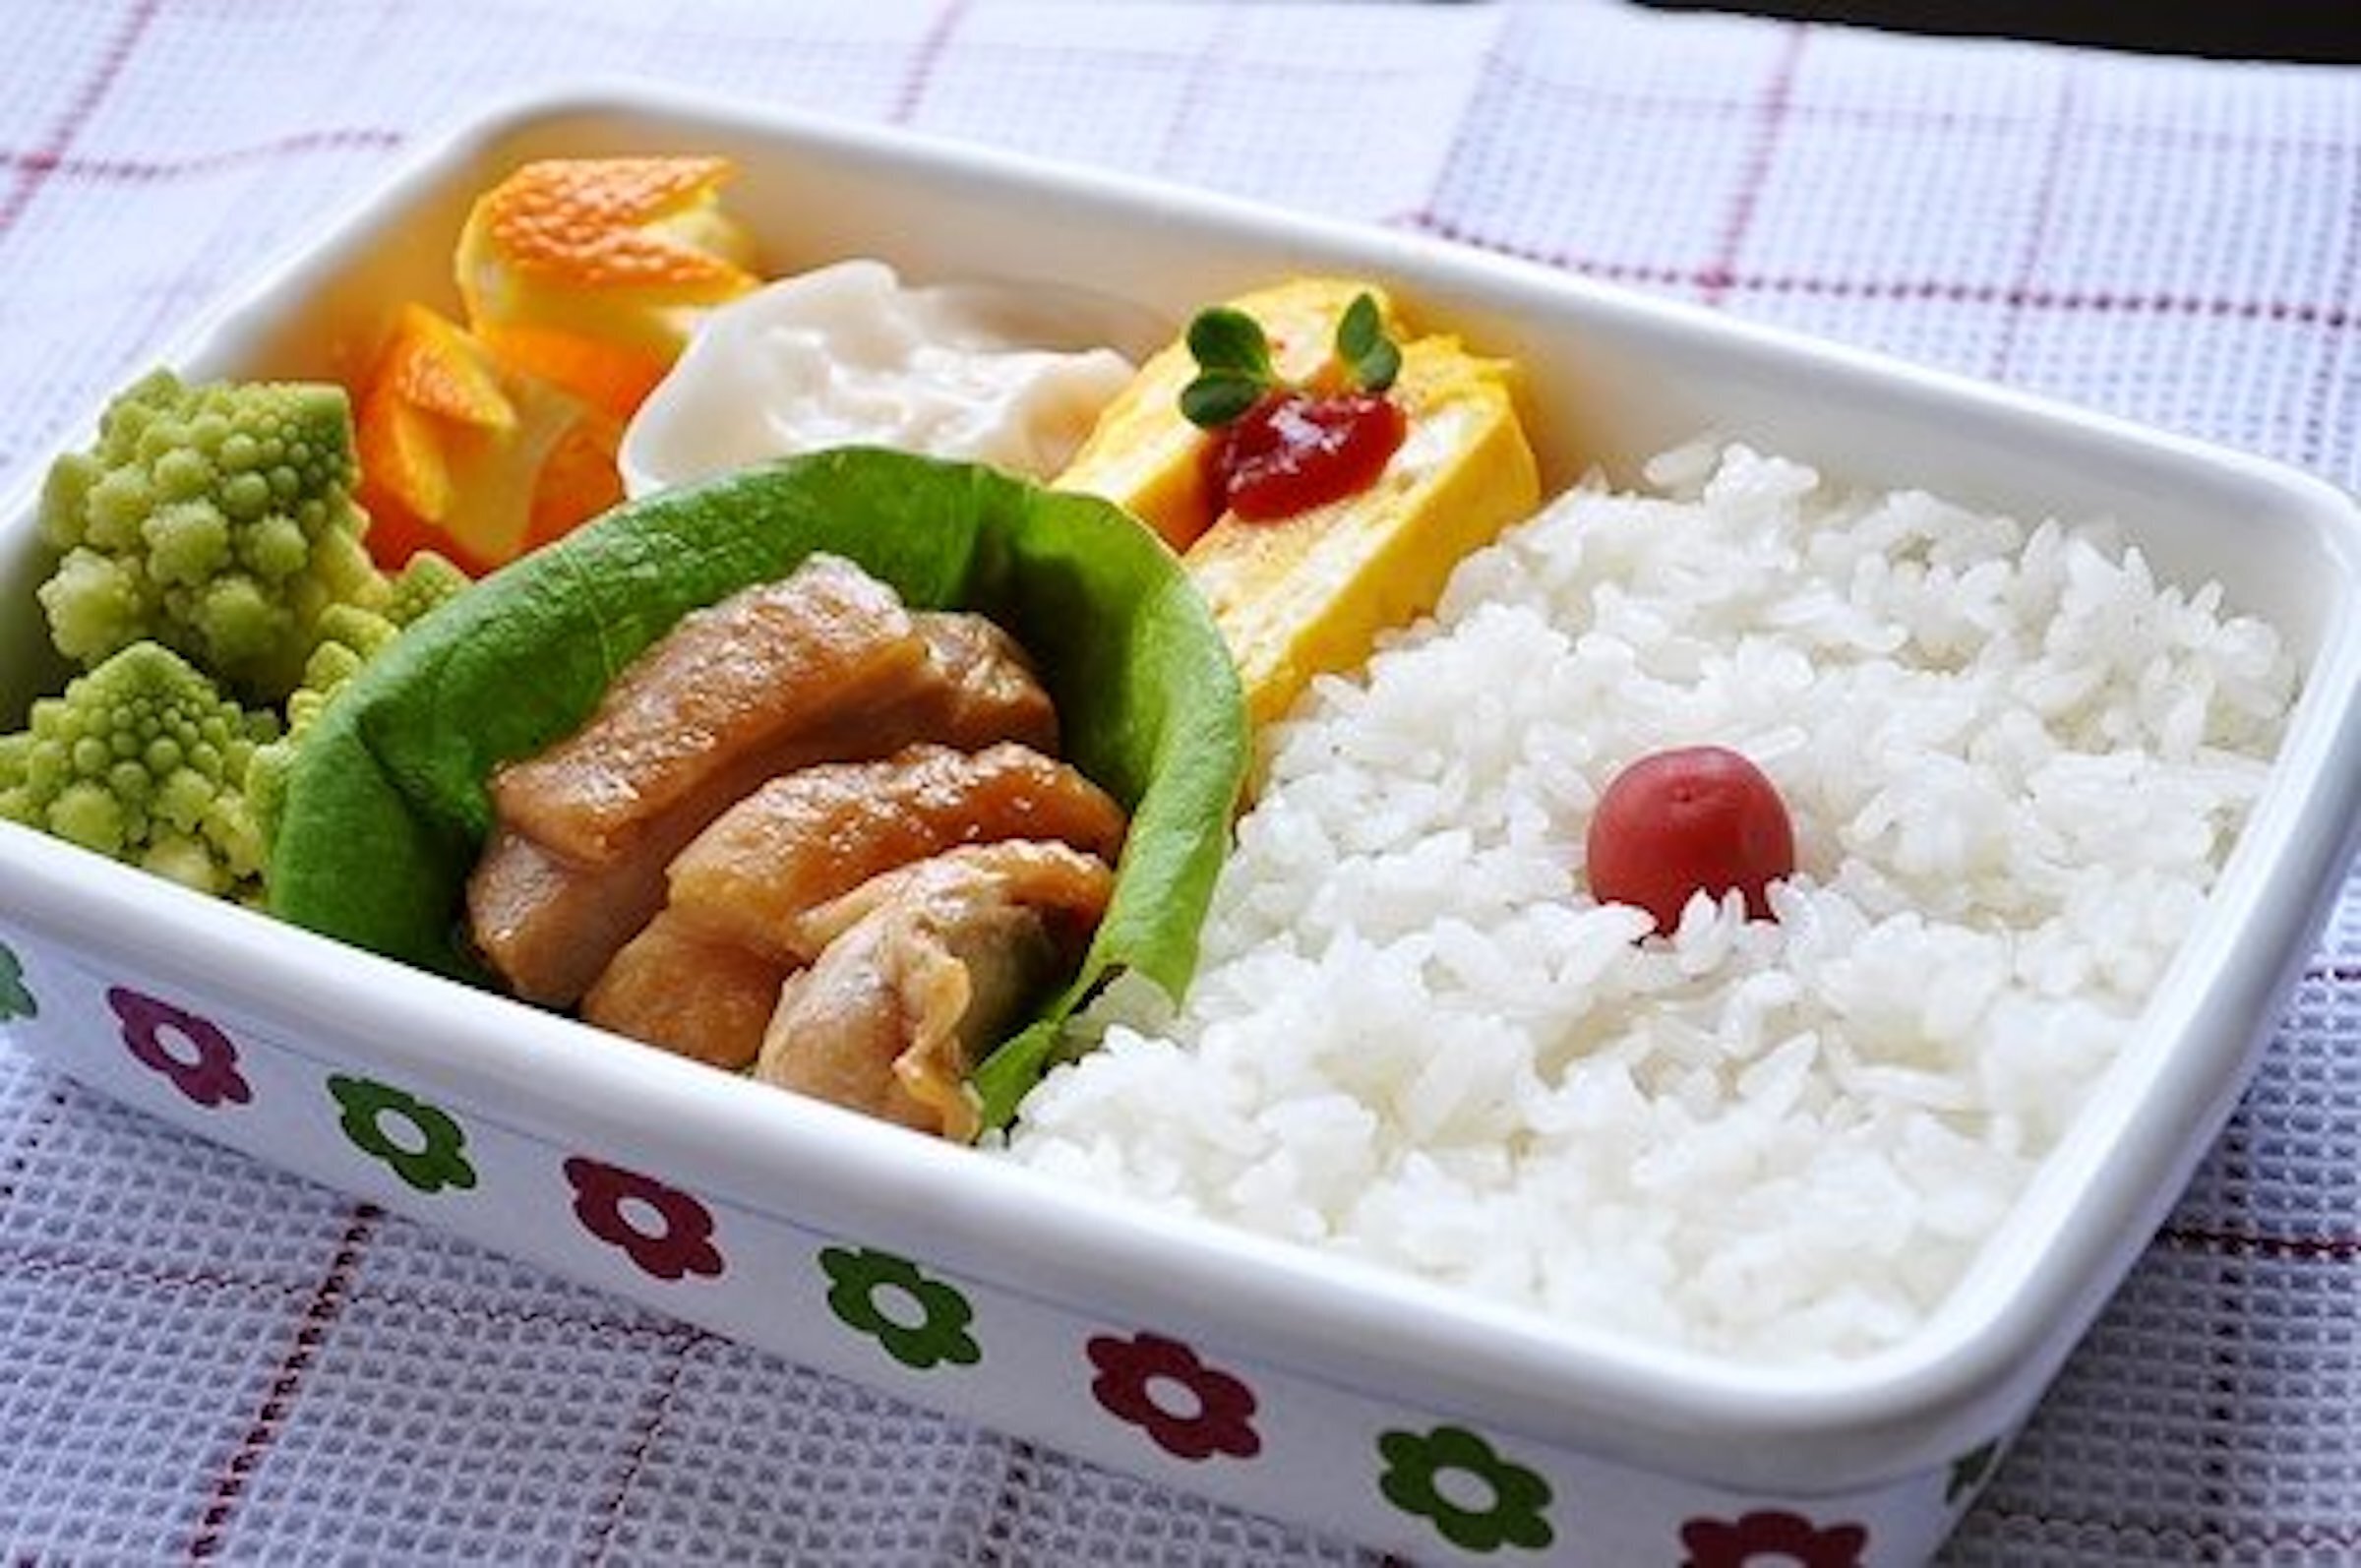 Bạn có thể mang cơm trưa đi ăn để đảm bảo an toàn thực phẩm.